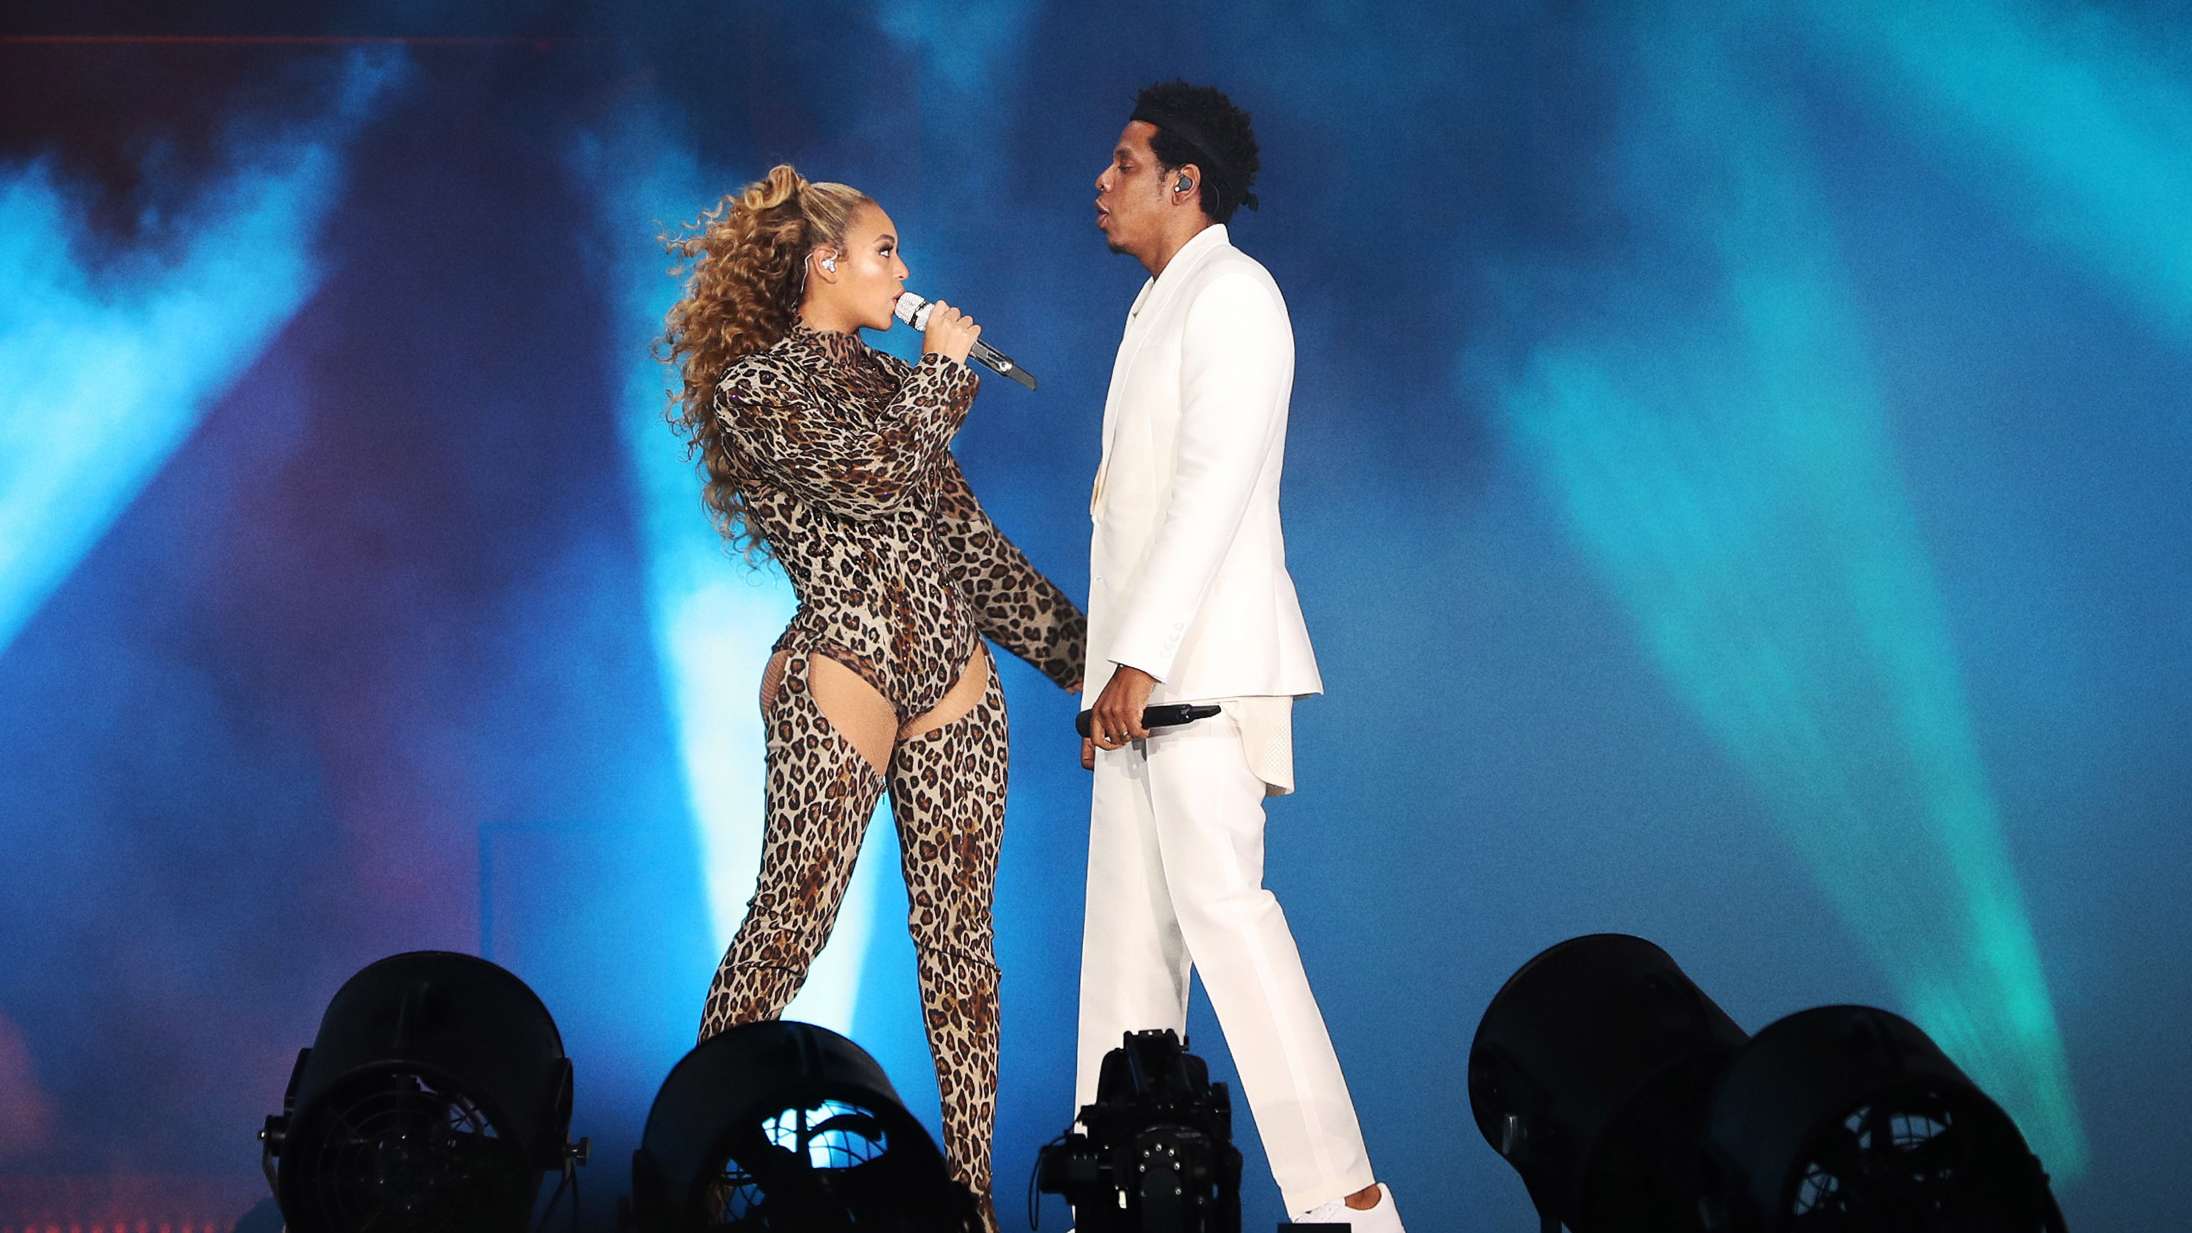 Mand stormer scenen under Beyoncé og Jay-Z-koncert